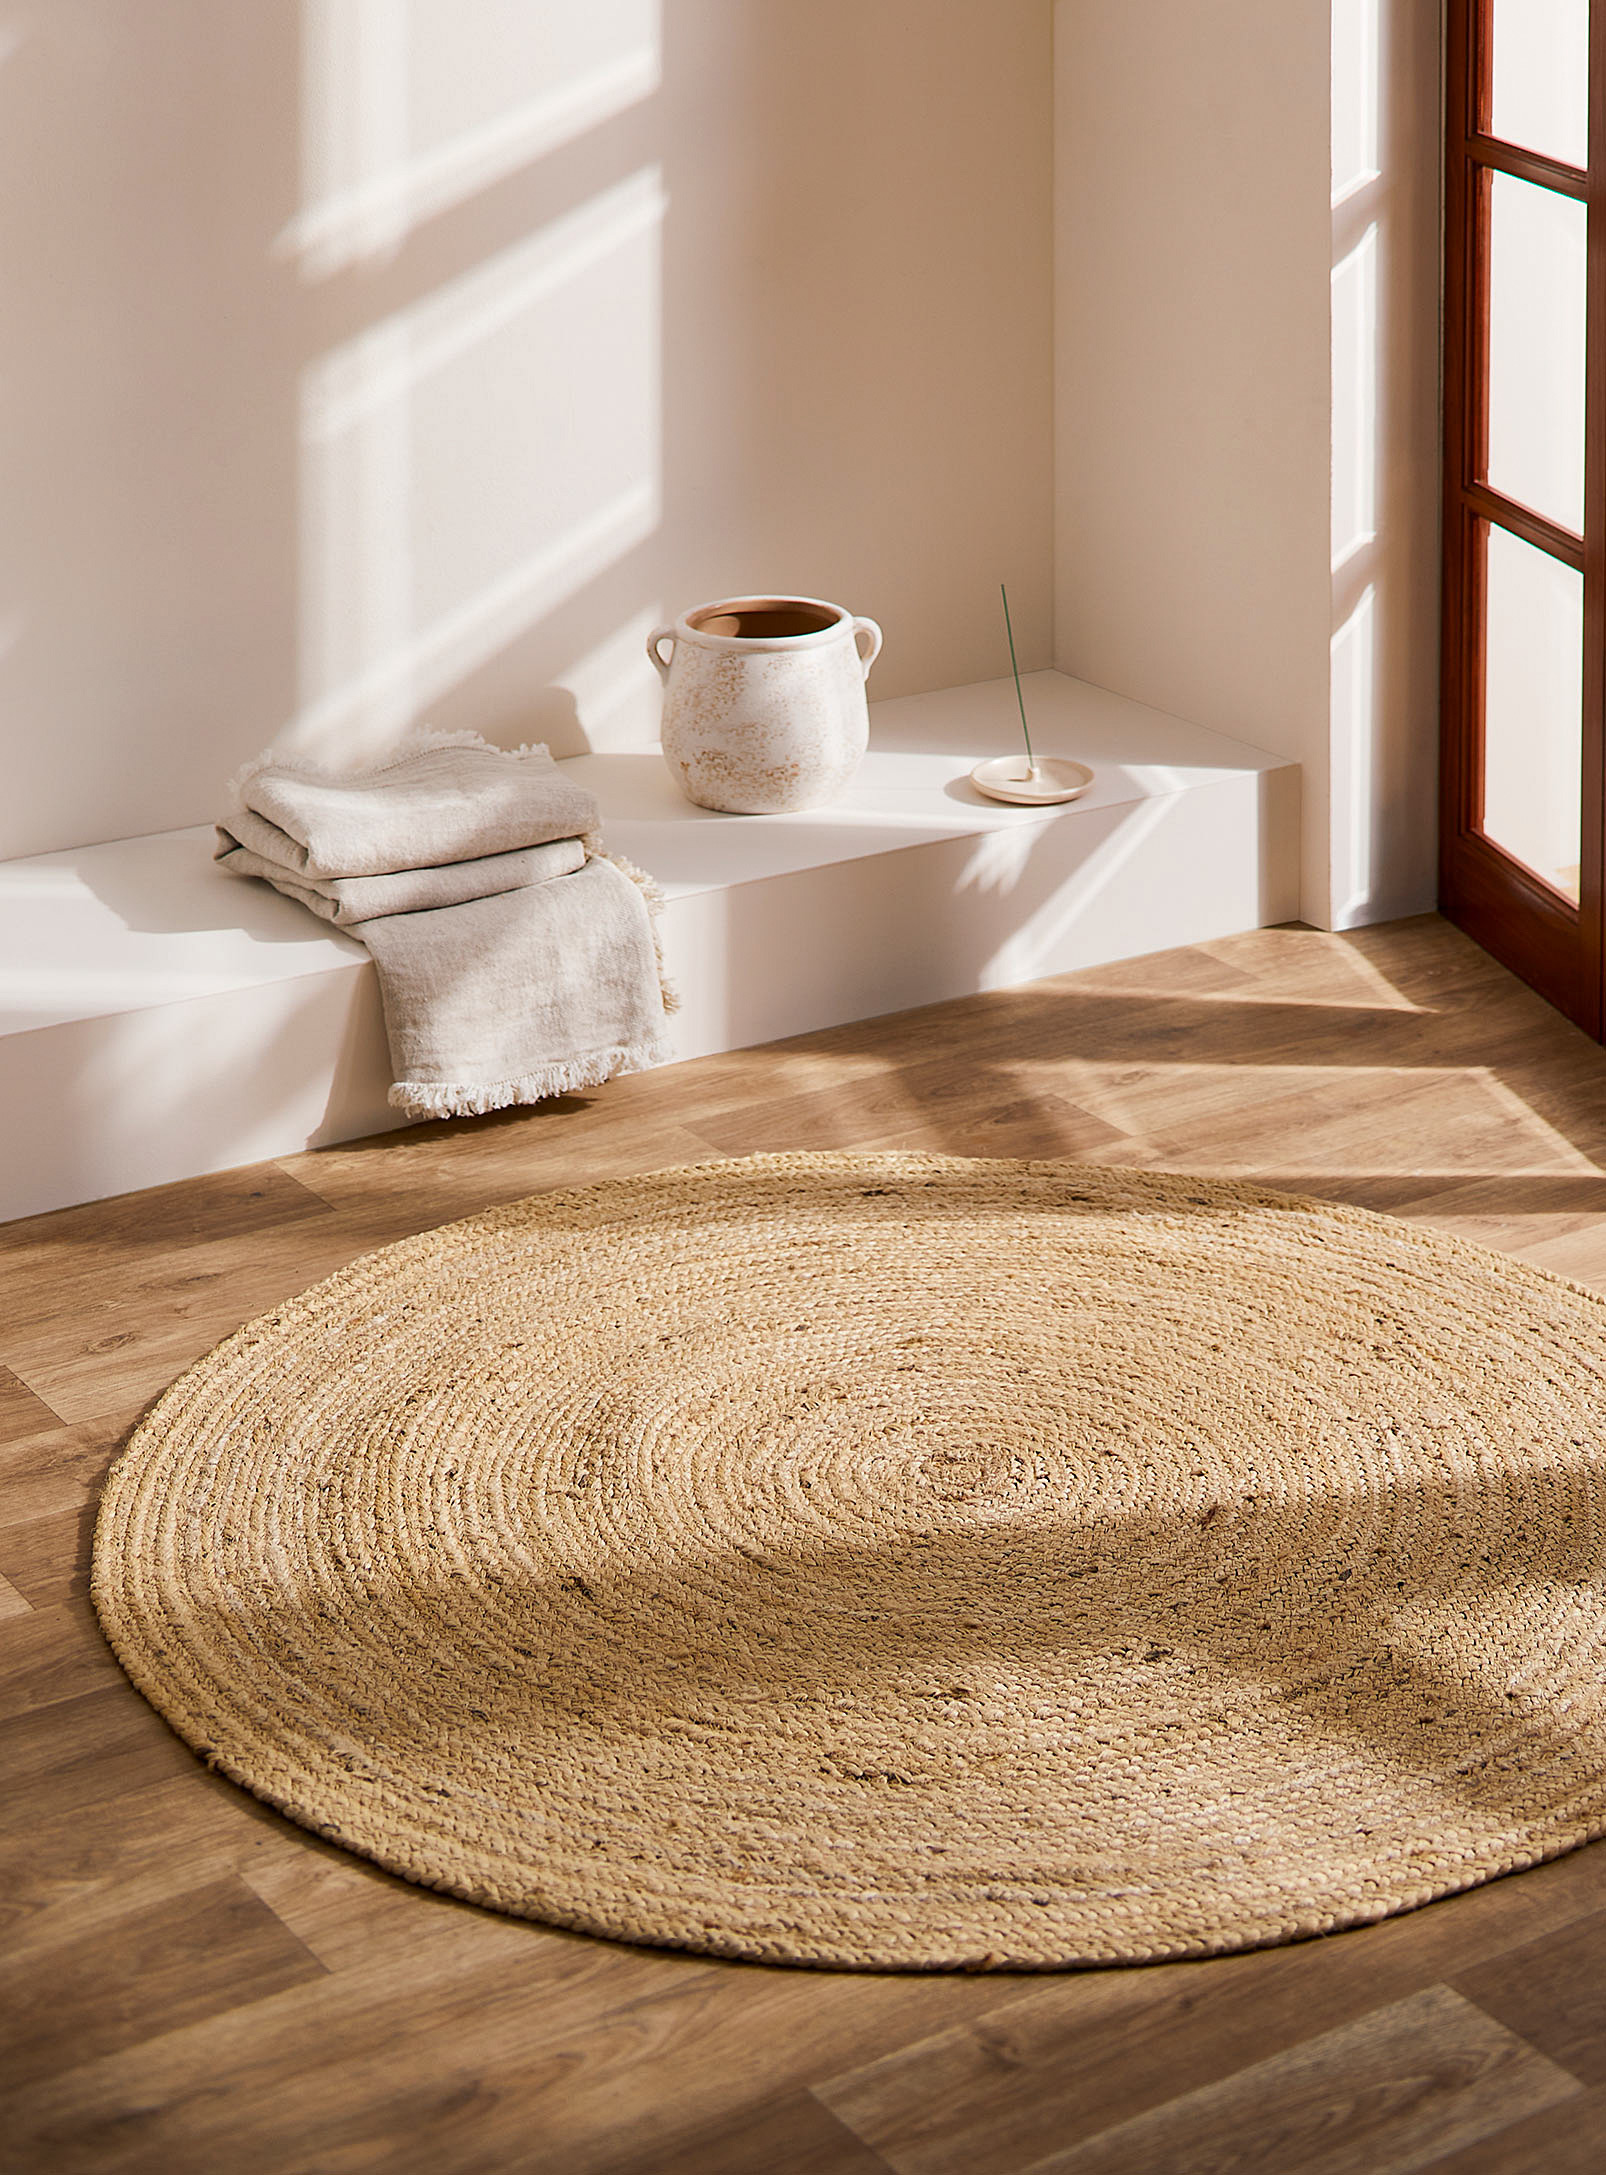 Simons Maison - Natural jute circular rug 120 cm in diameter